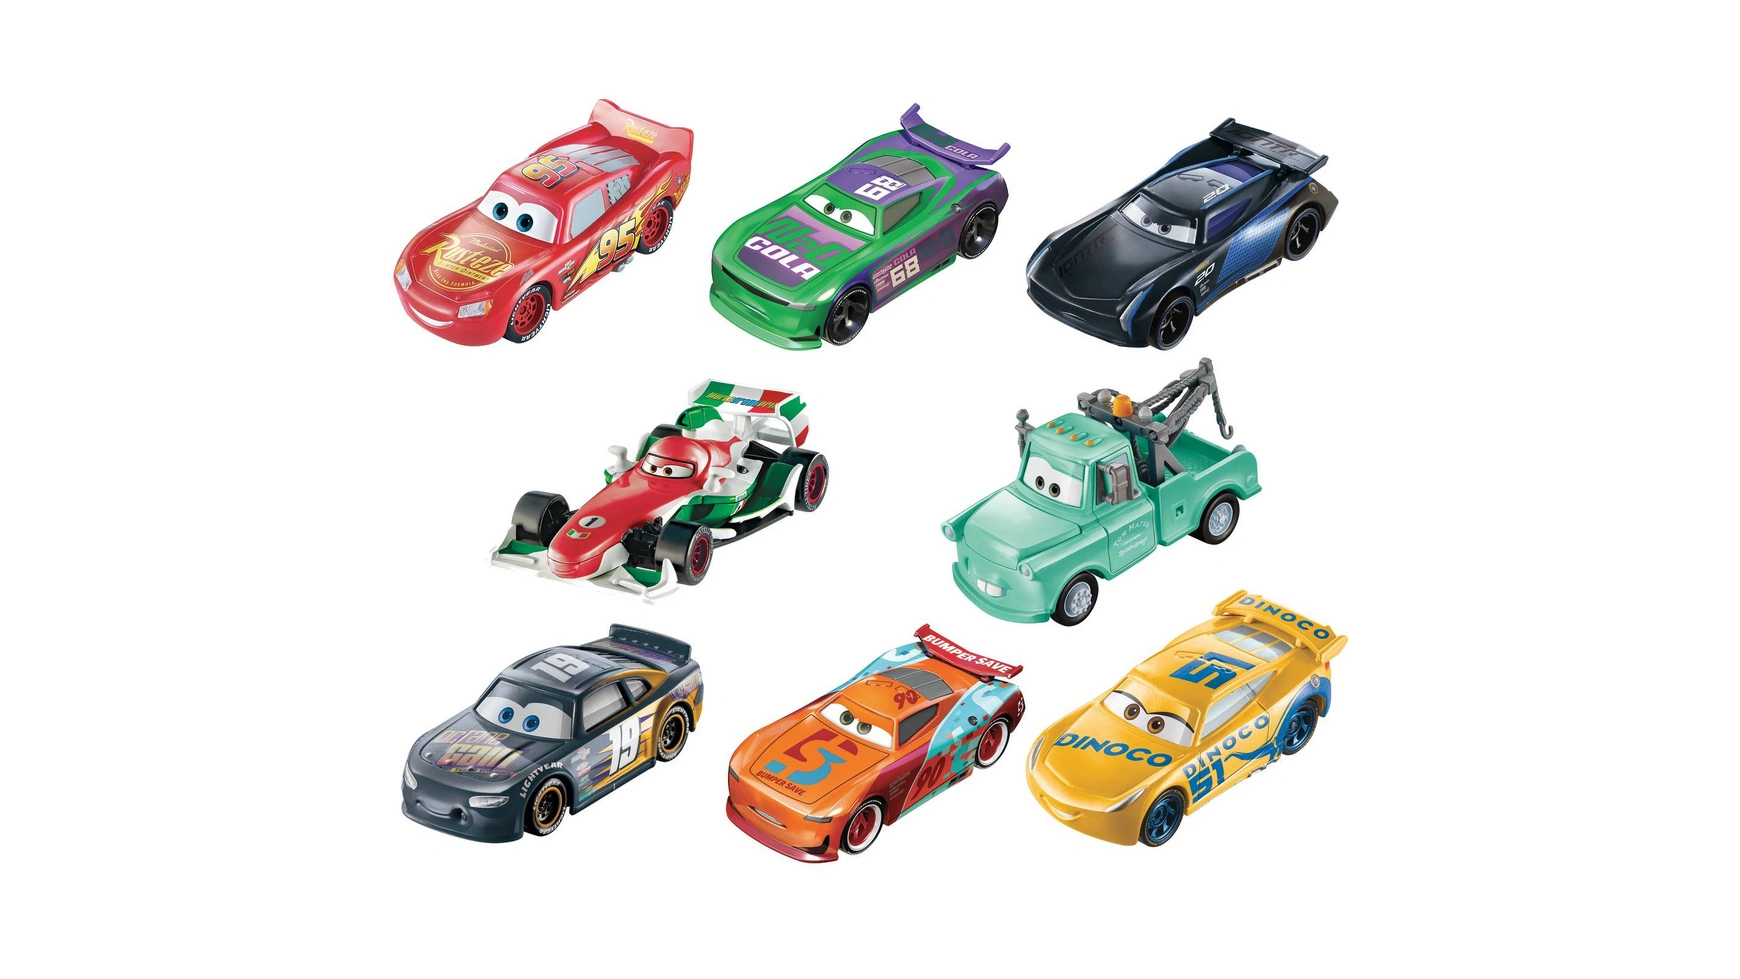 Машинки Disney Pixar, меняющие цвет, линейка транспортных средств Mattel Disney Cars Fahrzeuge набор литых автомобилей с персонажами disney pixar cars 1 шт в ассортименте mattel disney cars fahrzeuge